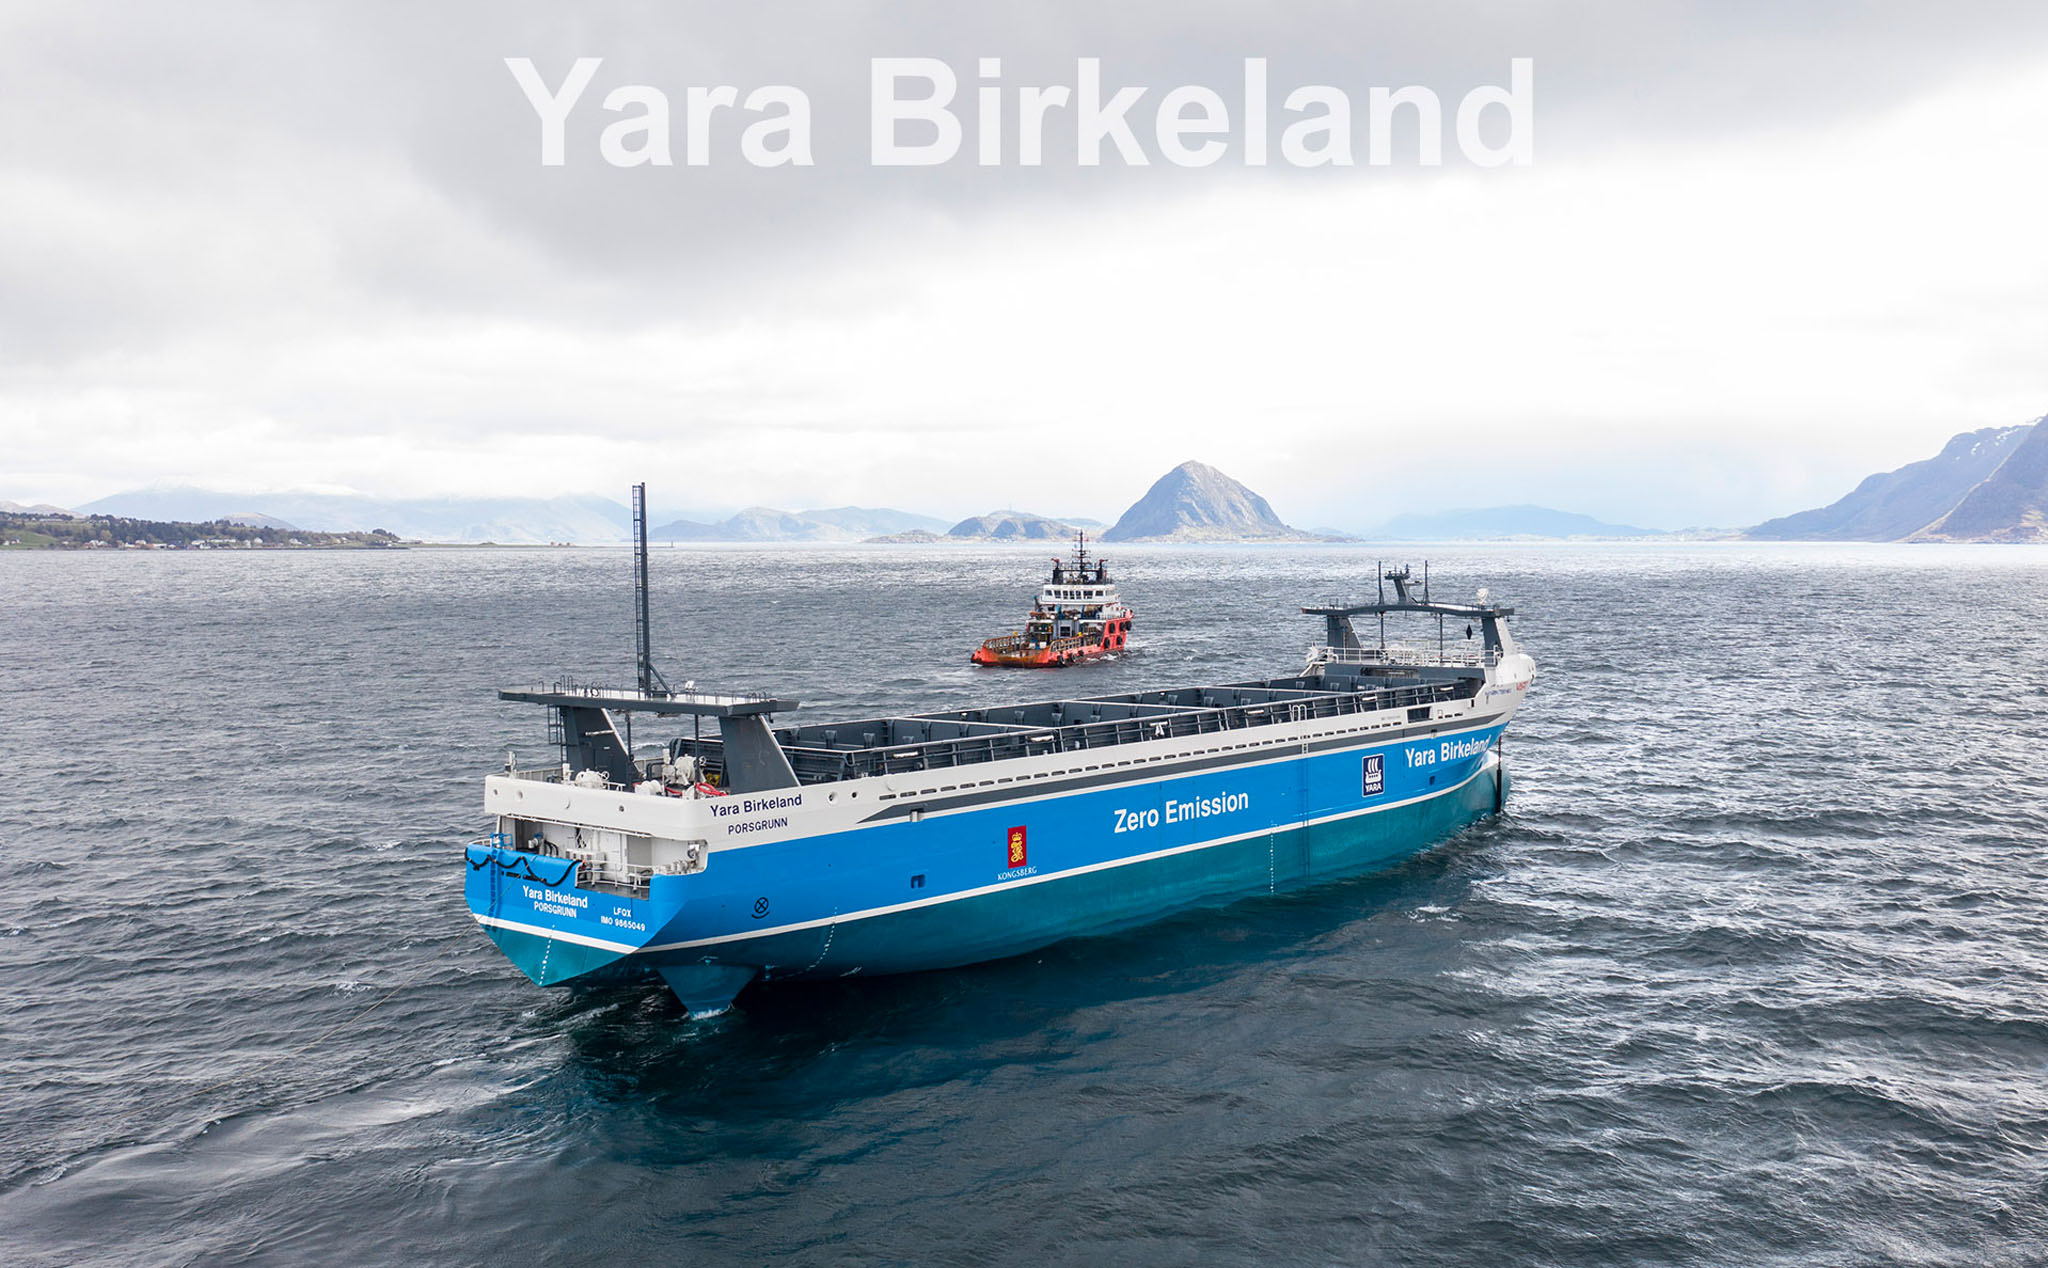 Kế hoạch về việc chế tạo tàu Yara Birkeland 